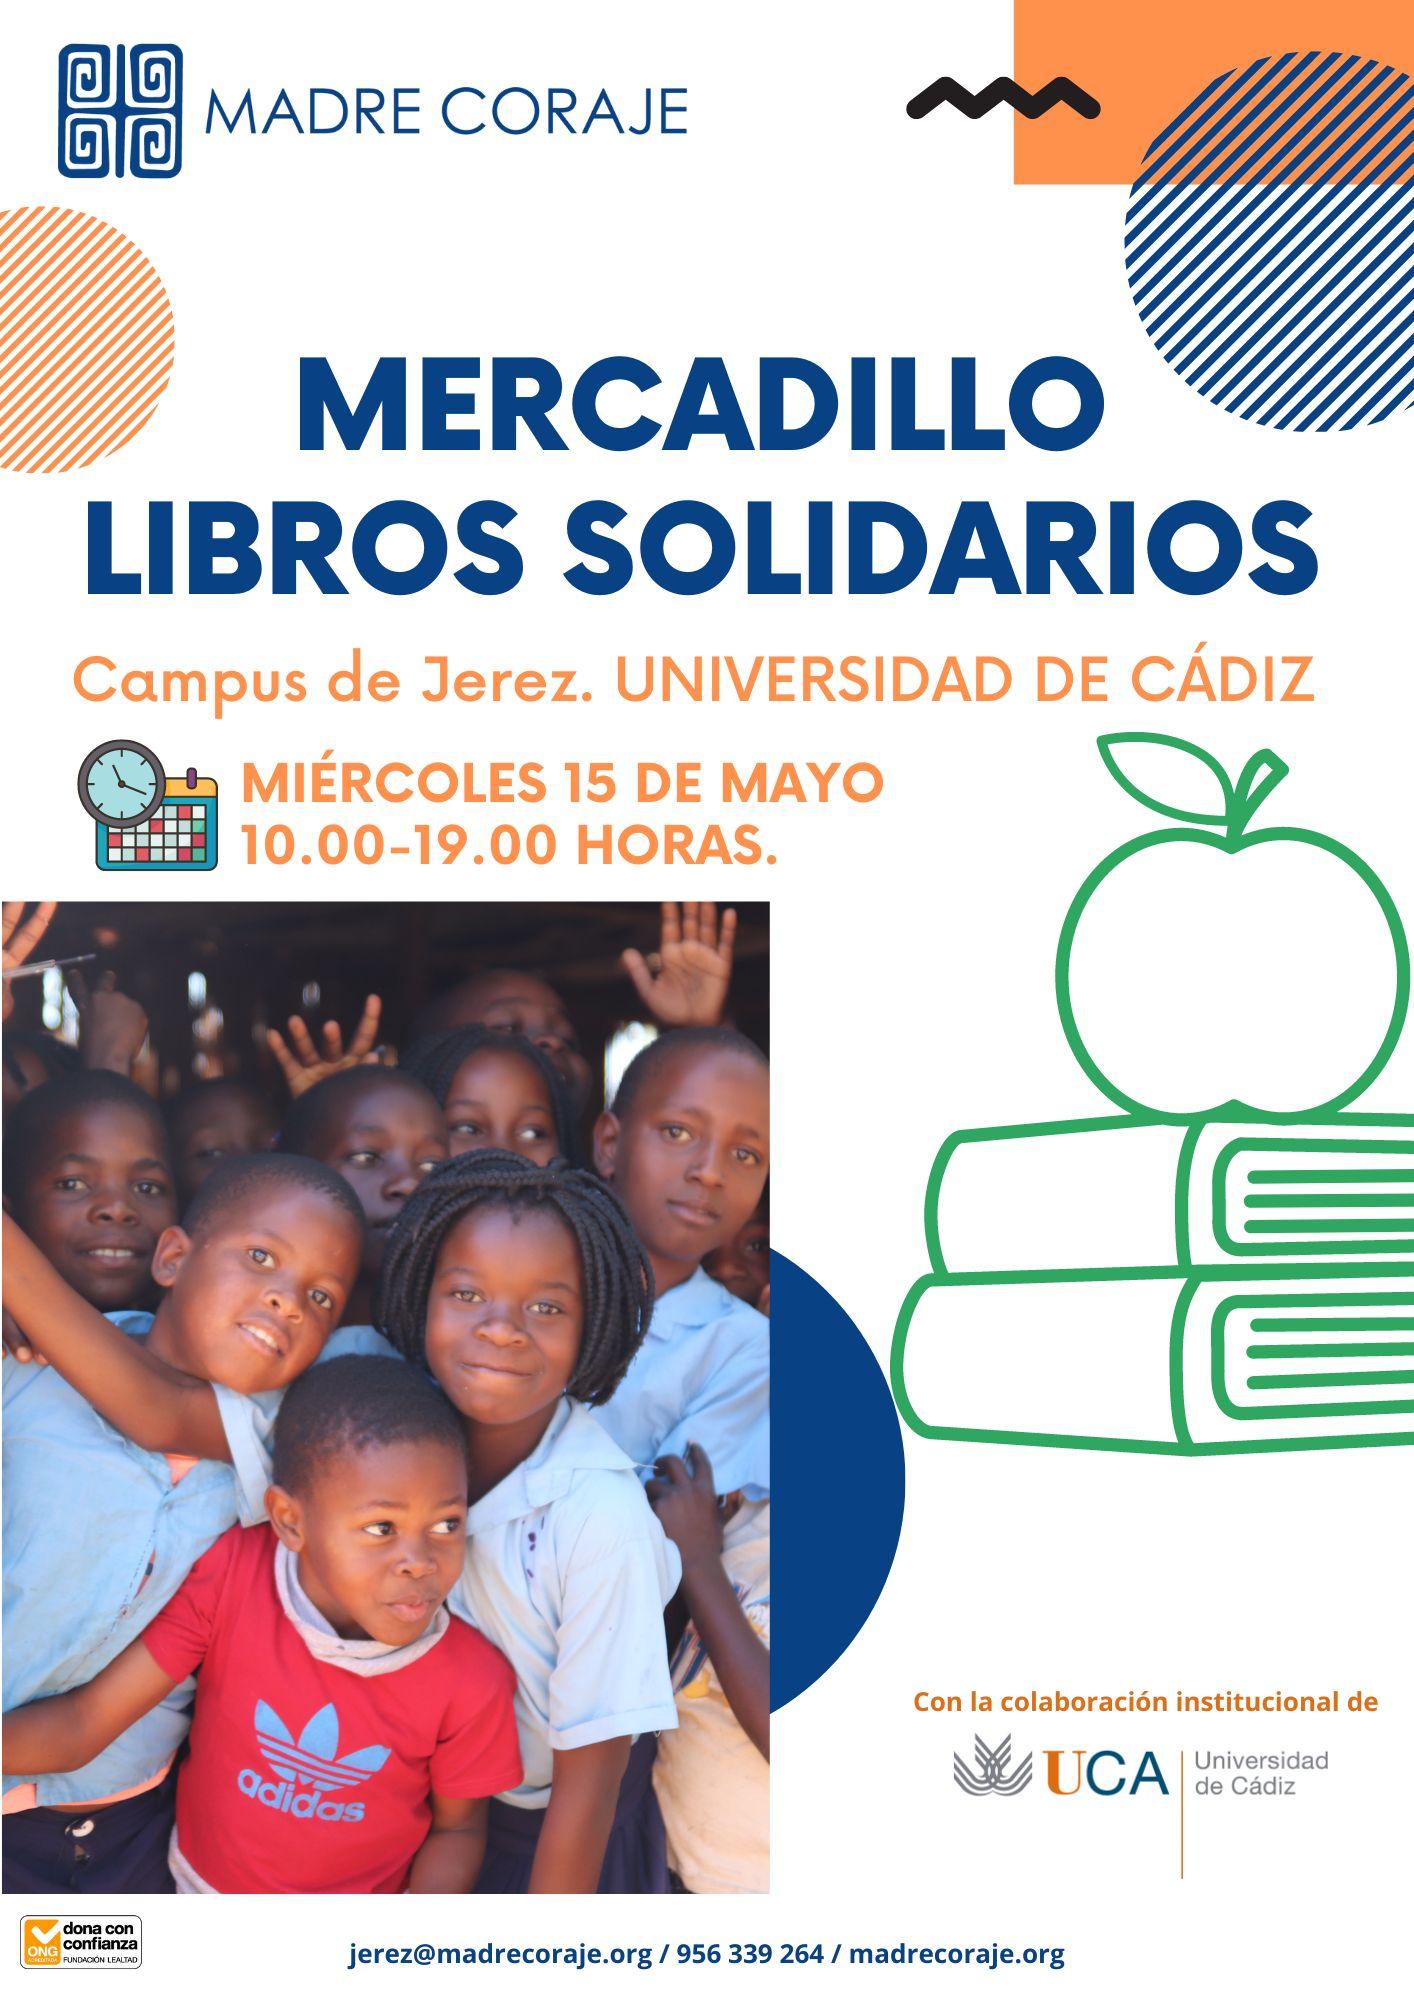 El Campus de Jerez acoge el miércoles 15 un mercadillo solidario de libros con una segunda vida de Madre Coraje